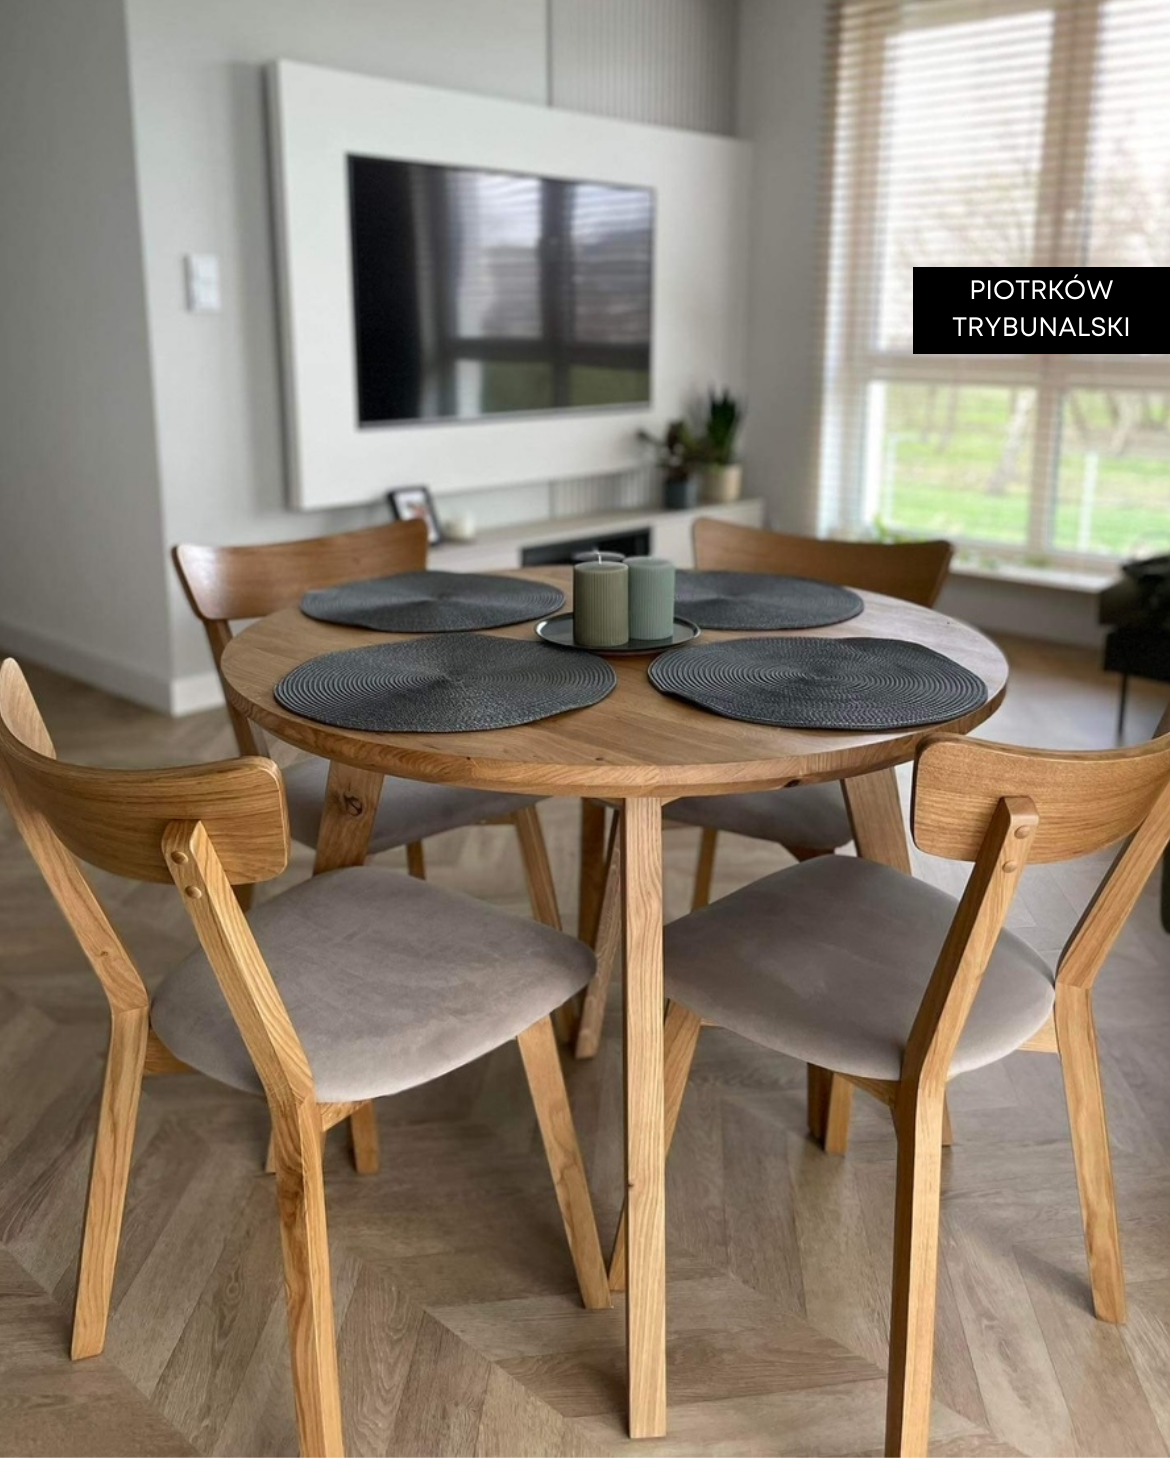 "stół dębowy CRUDO - meble drewniane na wymiar - loftowe, industrialne, skandynawskie”